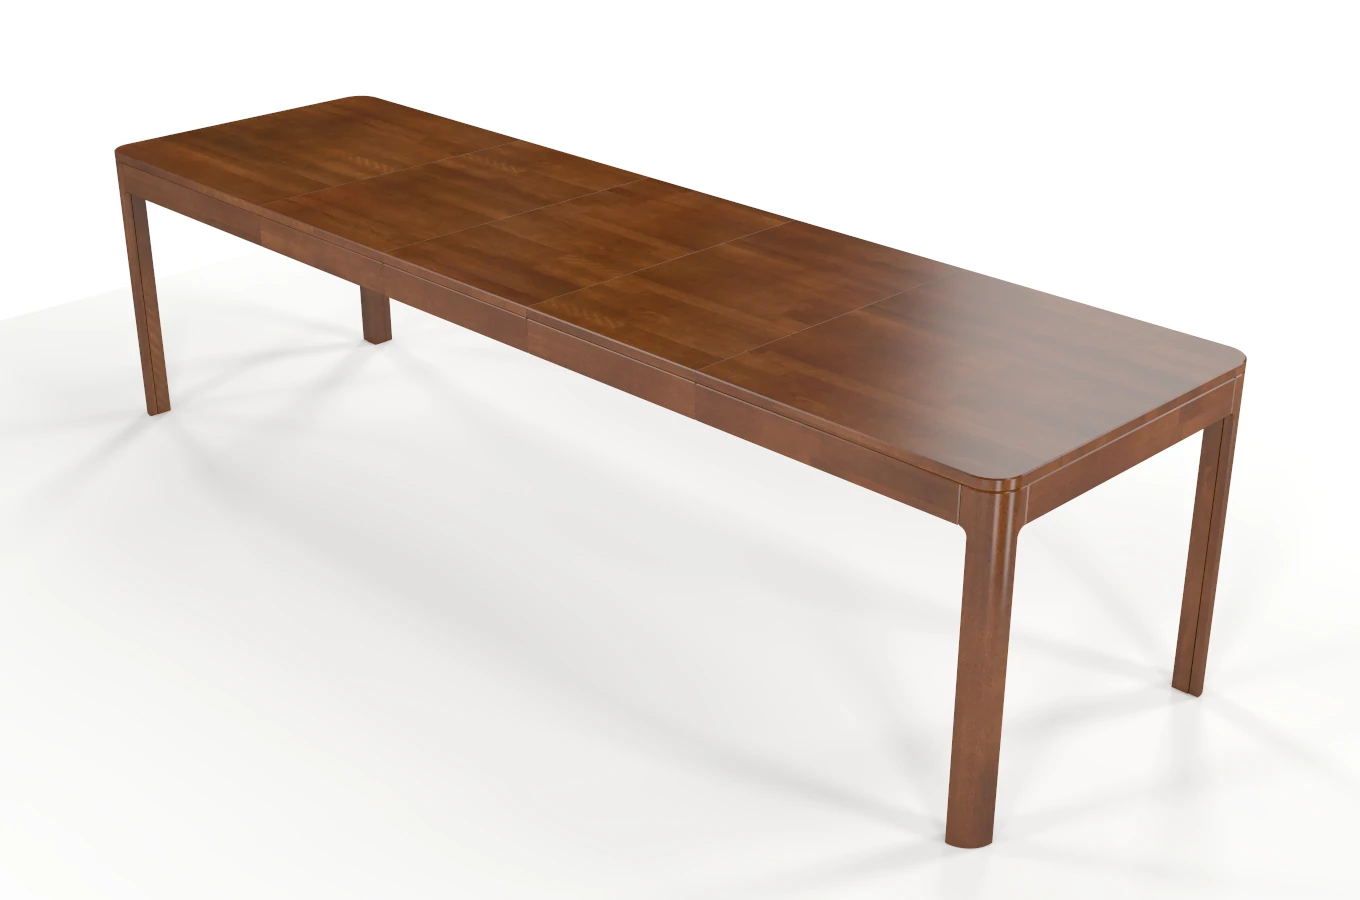 Stół drewniany bukowy rozkładany Skandica RUBY 140-260 cm